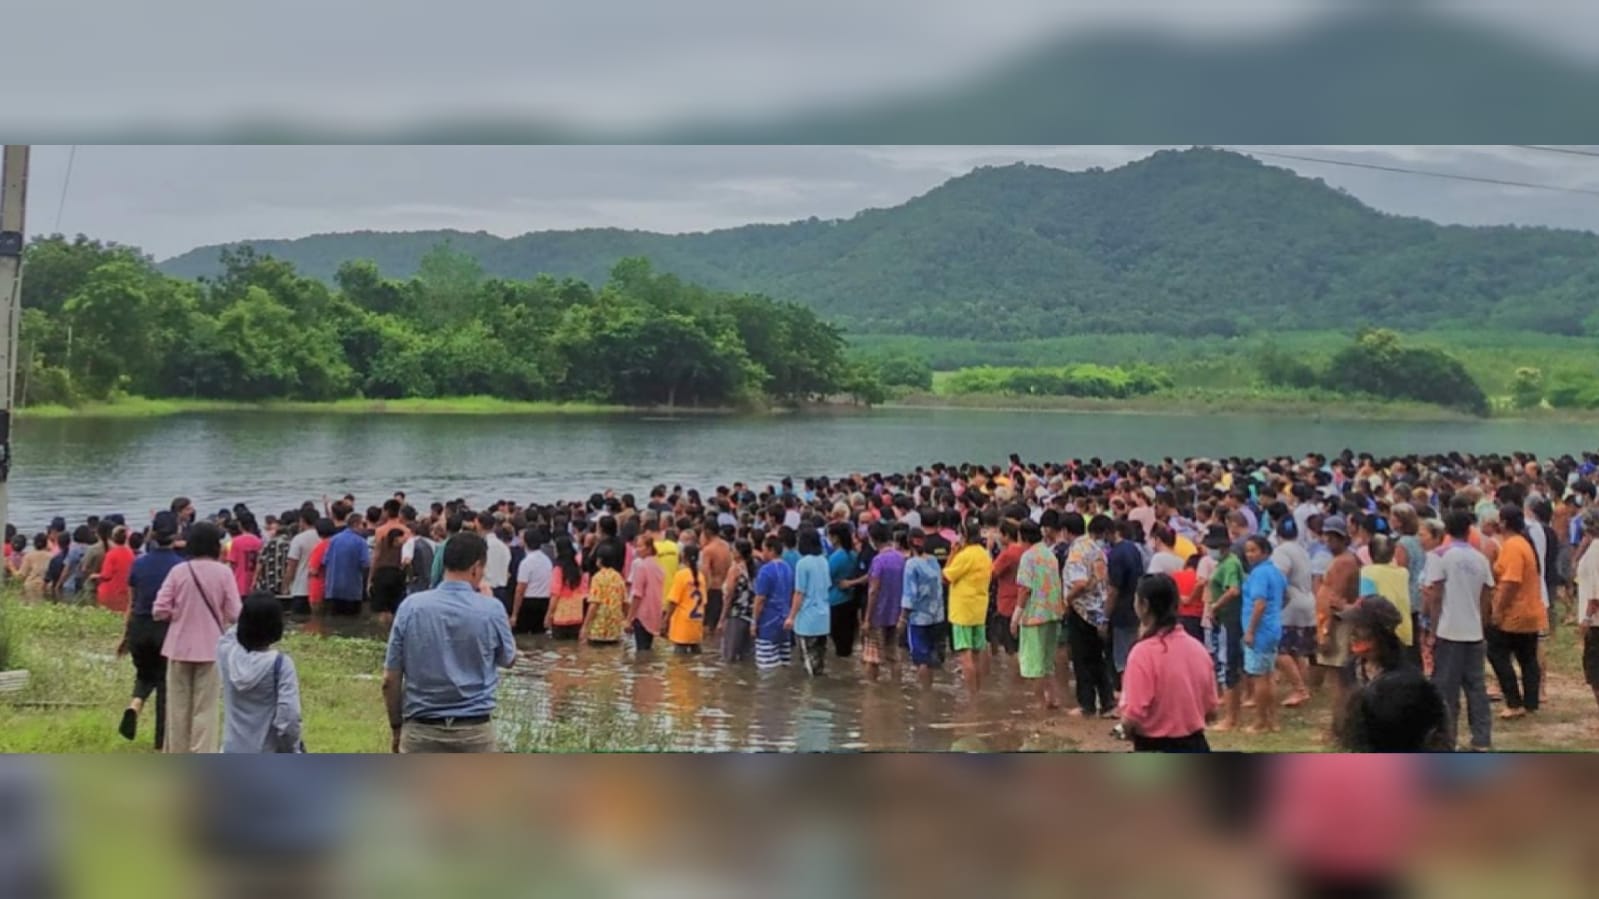 Avivamento: Mais de 1500 pessoas são batizadas em rio na Tailândia